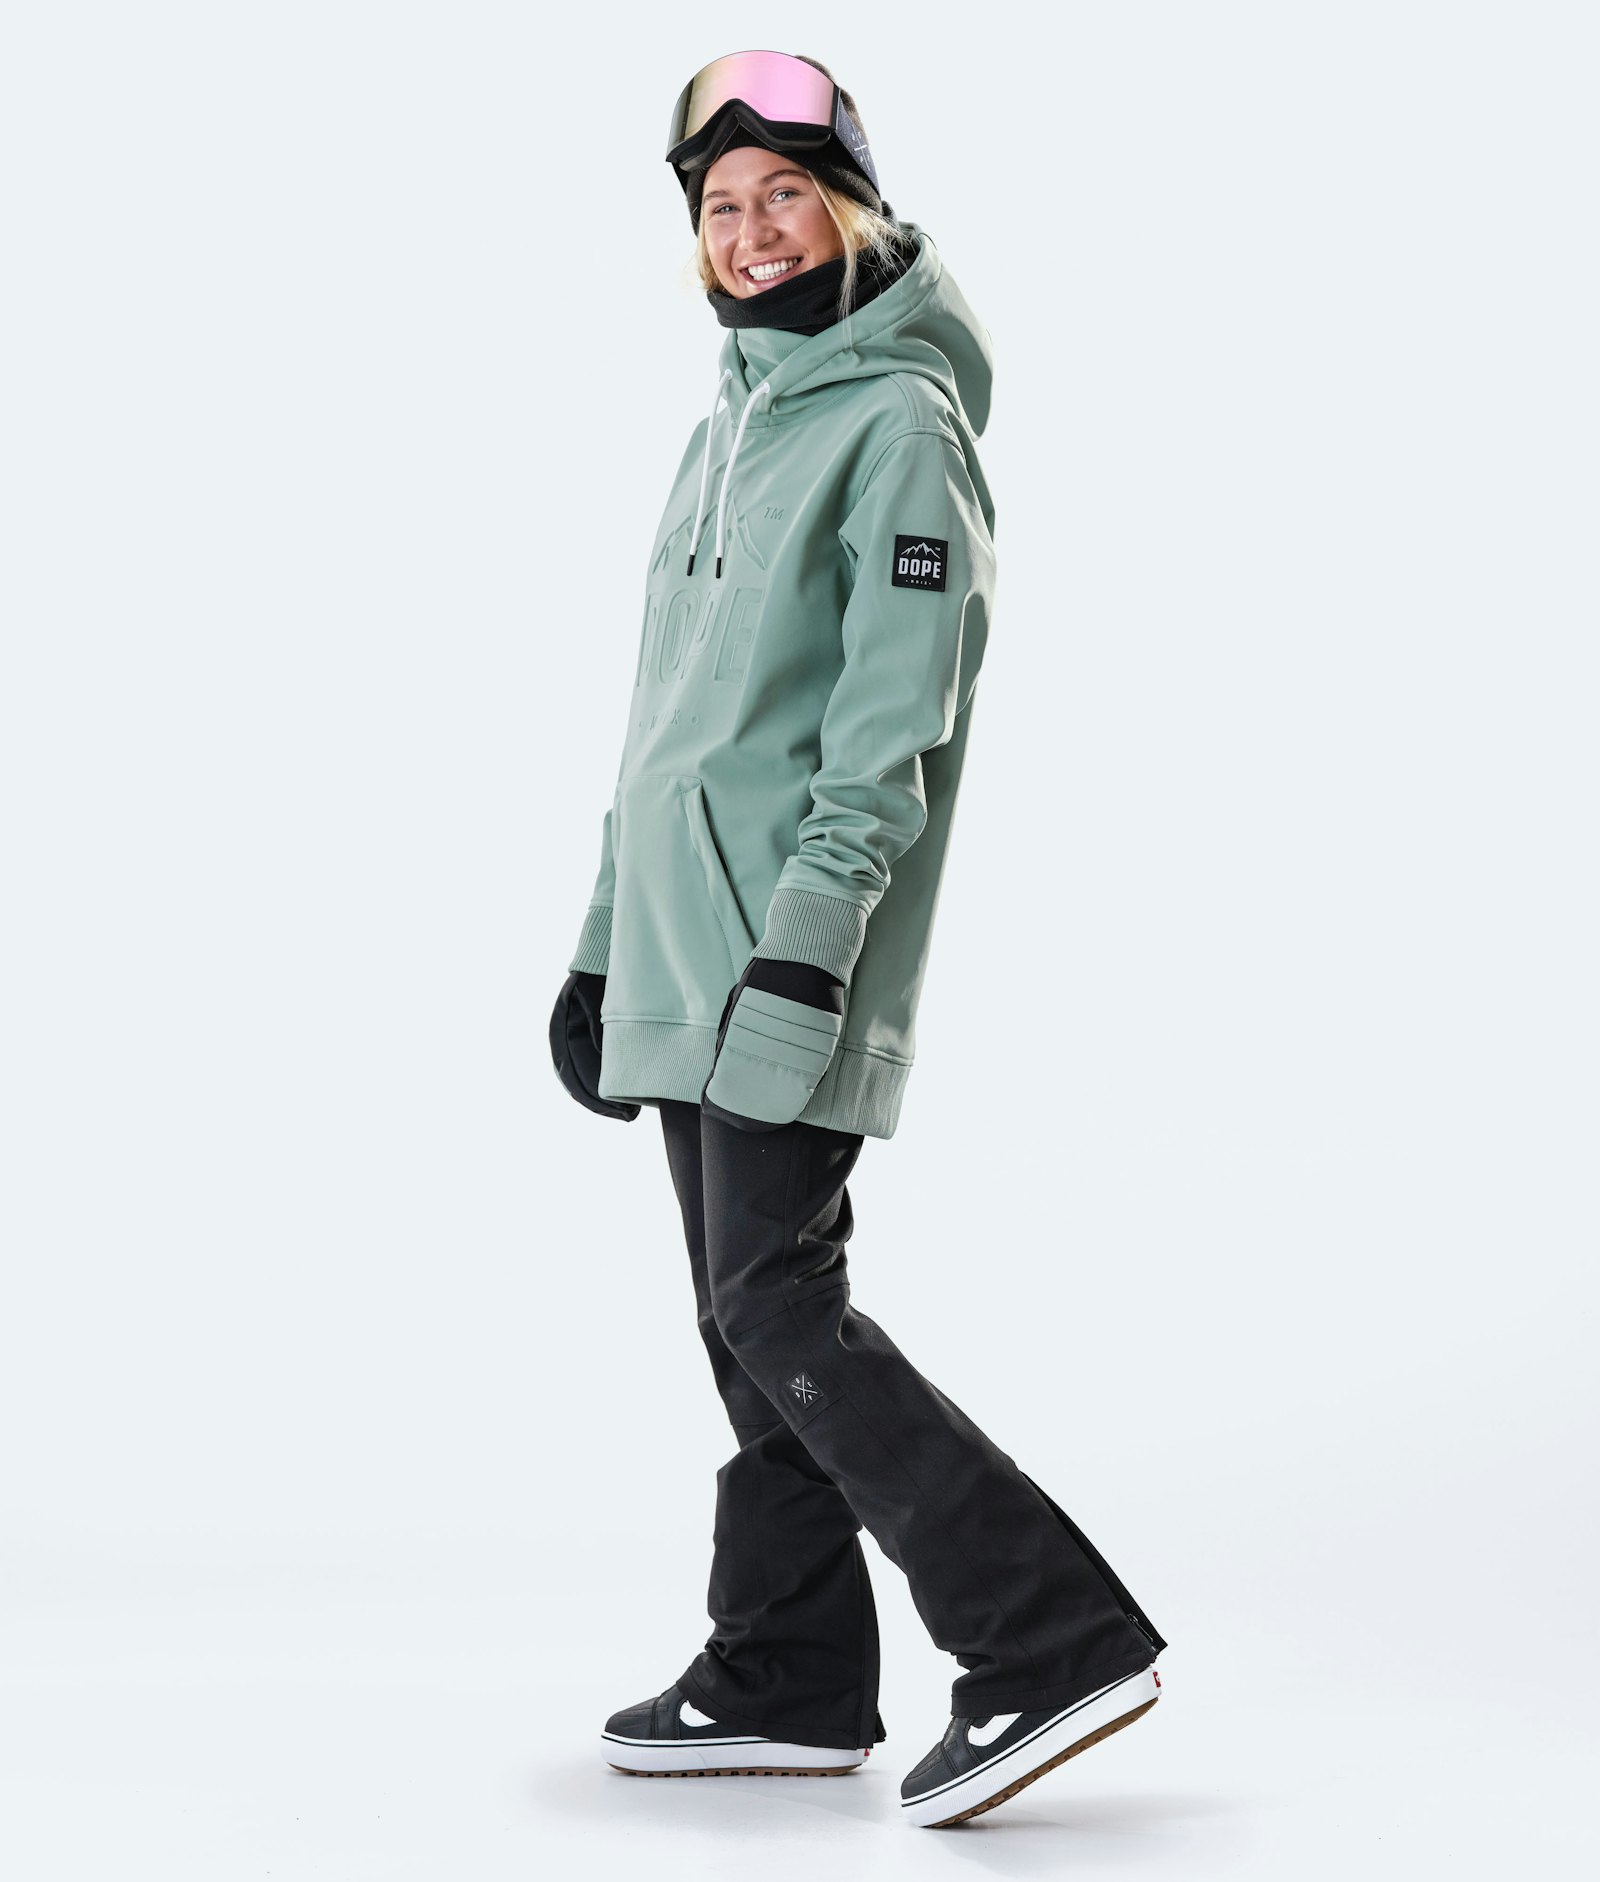 Dope Yeti W 10k Snowboard Jacket Women EMB Faded Green